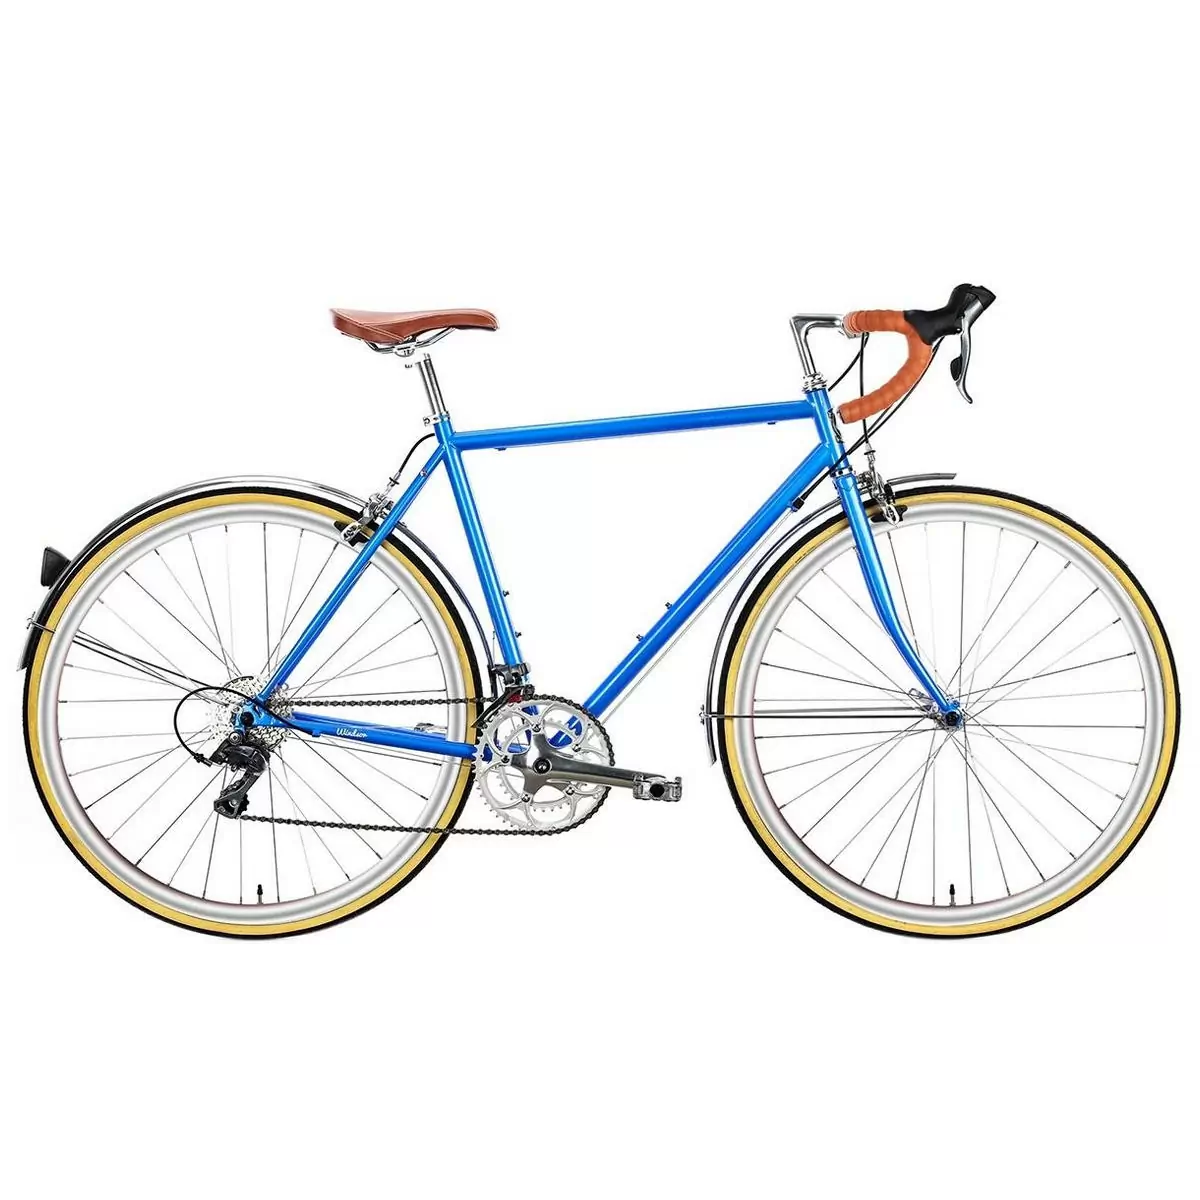 Bicicleta urbana TROY 16spd azul windsor pequena 49cm - image